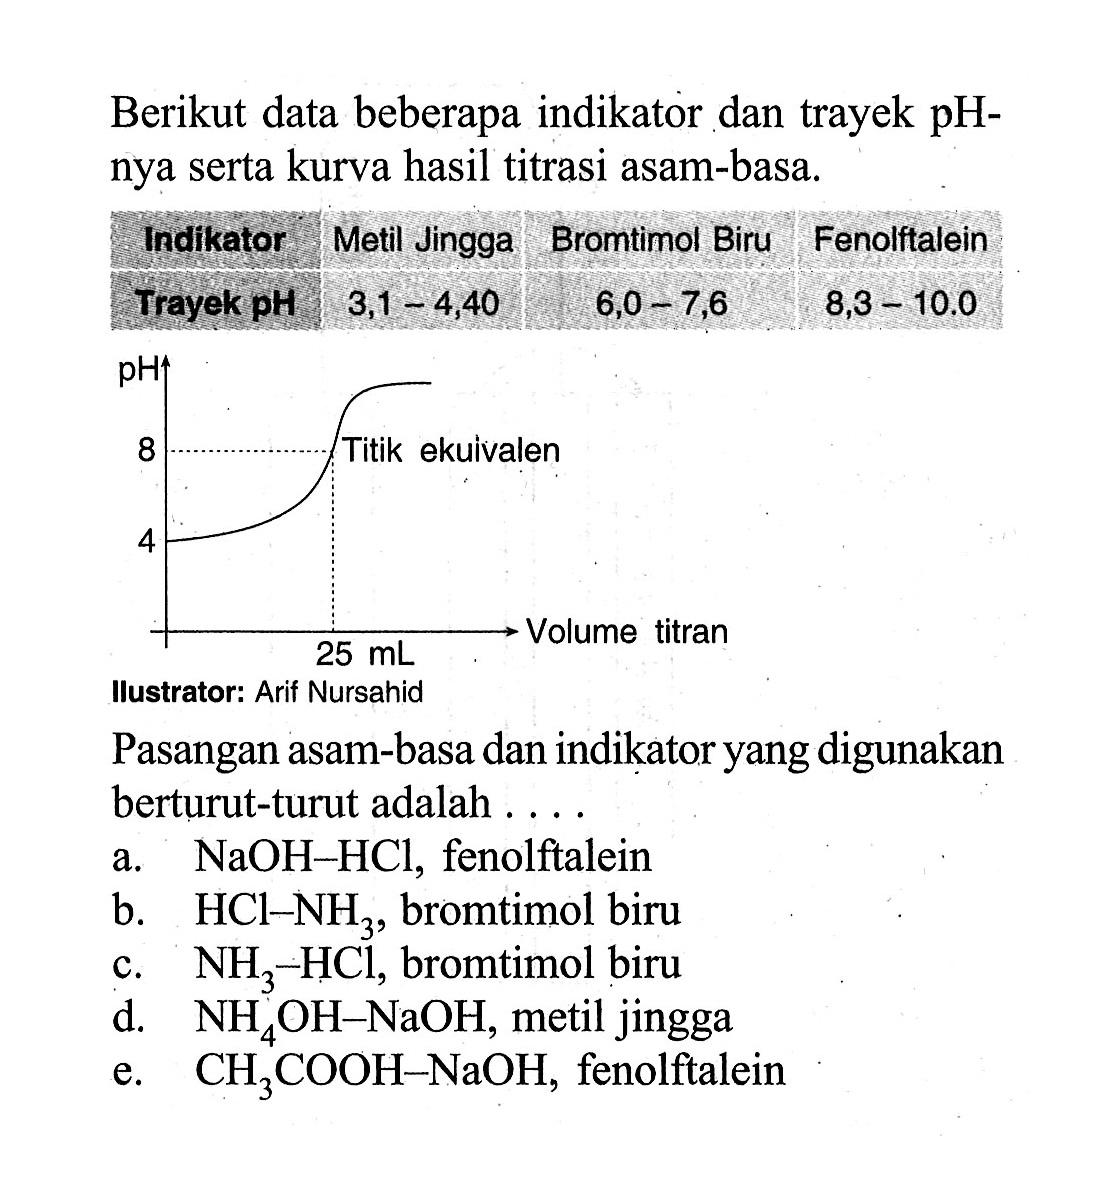 Berikut data beberapa indikator dan trayek pHnya serta kurva hasil titrasi asam-basa. Indikator Metil Jingga Bromtimol Biru Fenolftalein Trayek pH 3,1-4,40 6,0-7,6 8,3-10.0 pH 4 8Titik ekuivalenVolume titran 25mLllustrator: Arif NursahidPasangan asam-basa dan indikator yang digunakan berturut-turut adalah ....a. NaOH-HCl, fenolftaleinb. HCl-NH3, bromtimol biruc. NH3-HCl, bromtimol birud. NH4OH-NaOH, metil jinggae. CH3COOH-NaOH, fenolftalein